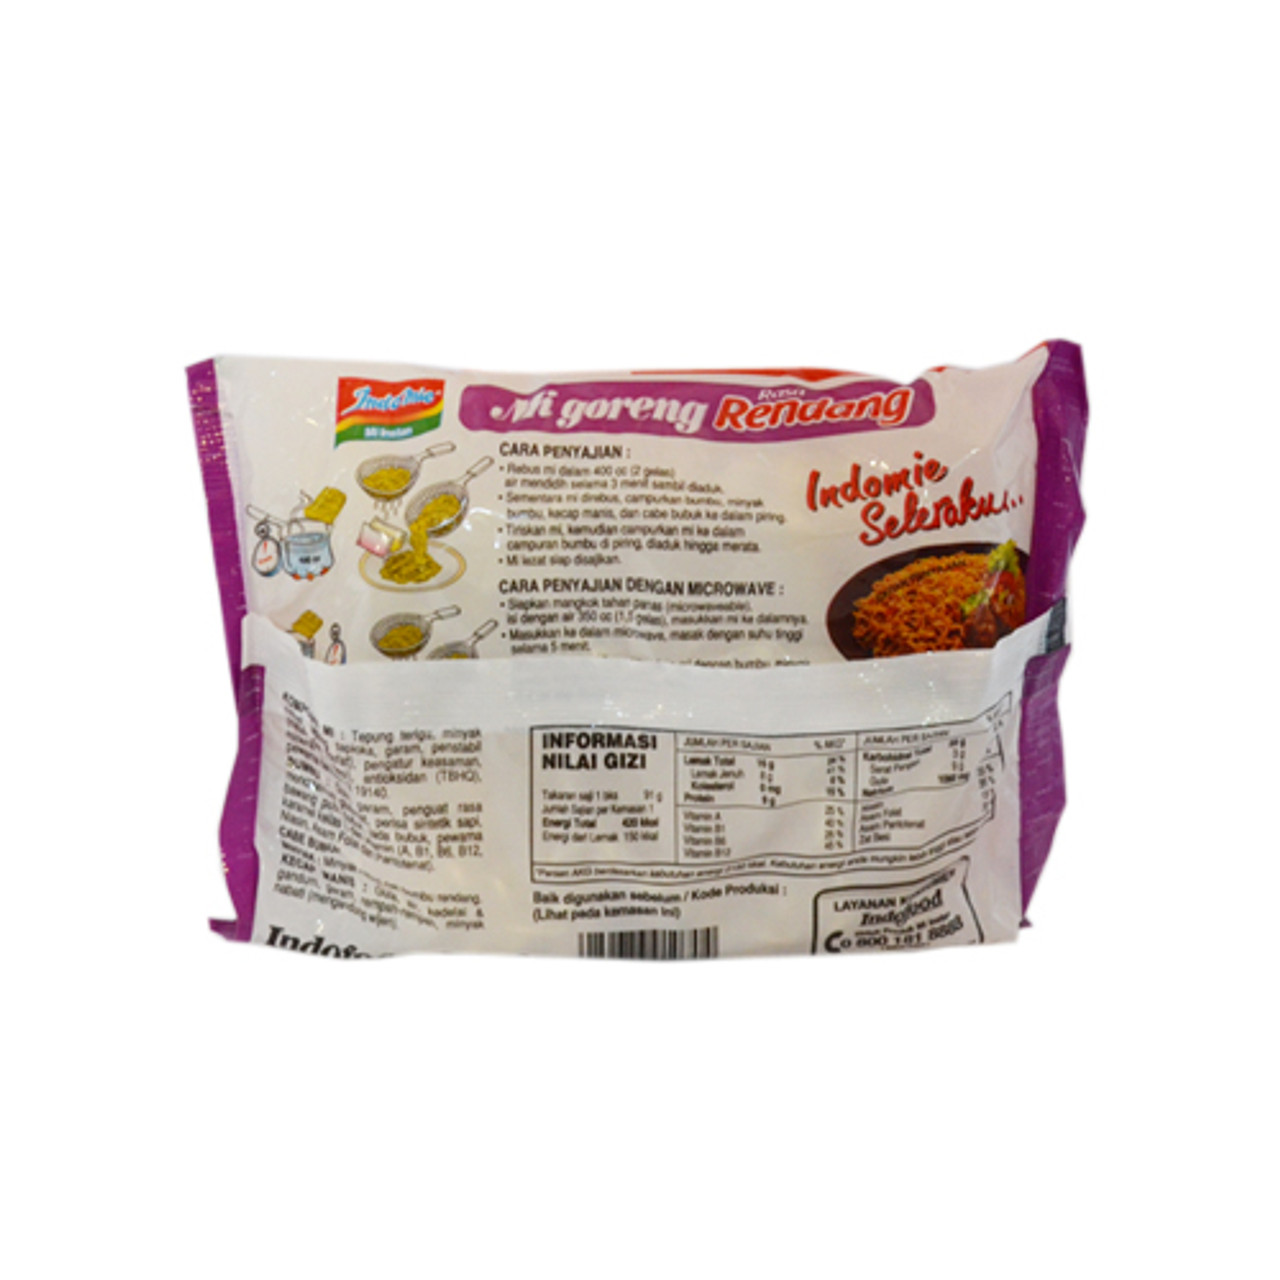 Indomie Instant Noodle Mi Goreng Rendang, 91 Gram (1 pcs) - UD